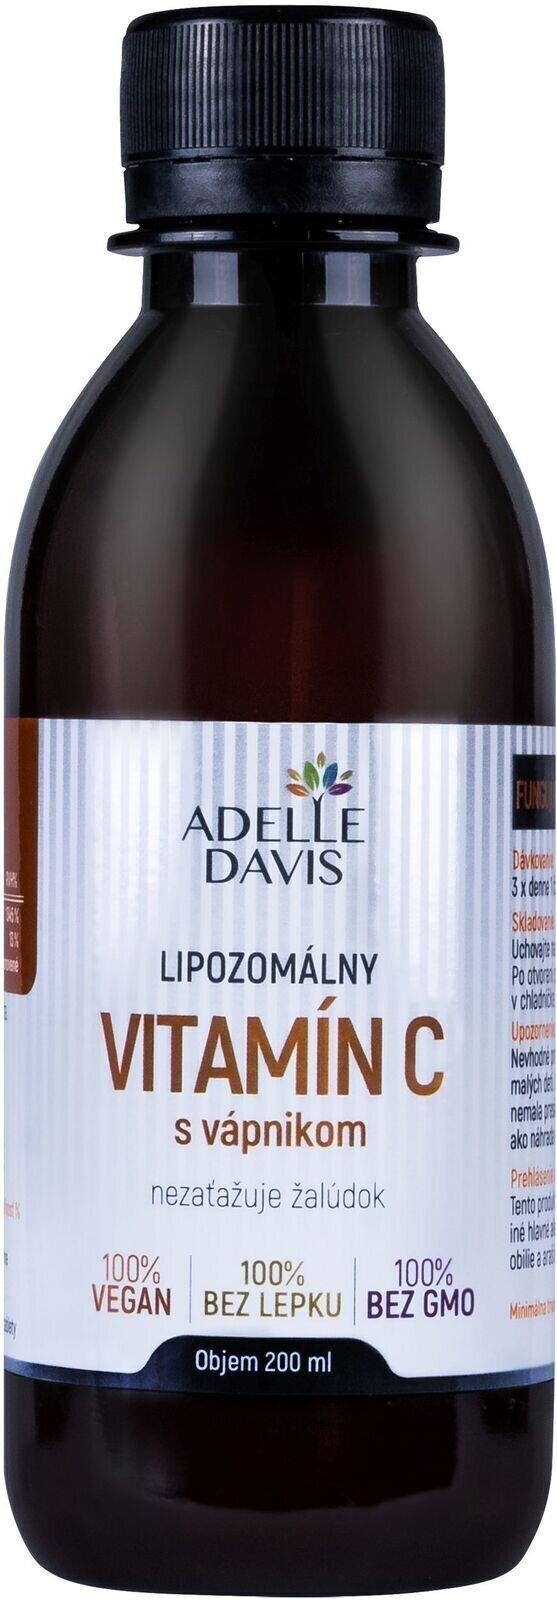 Vitamin C Adelle Davis Liposomal Vitamin C Calcium 200 ml Vitamin C with Calcium Vitamin C